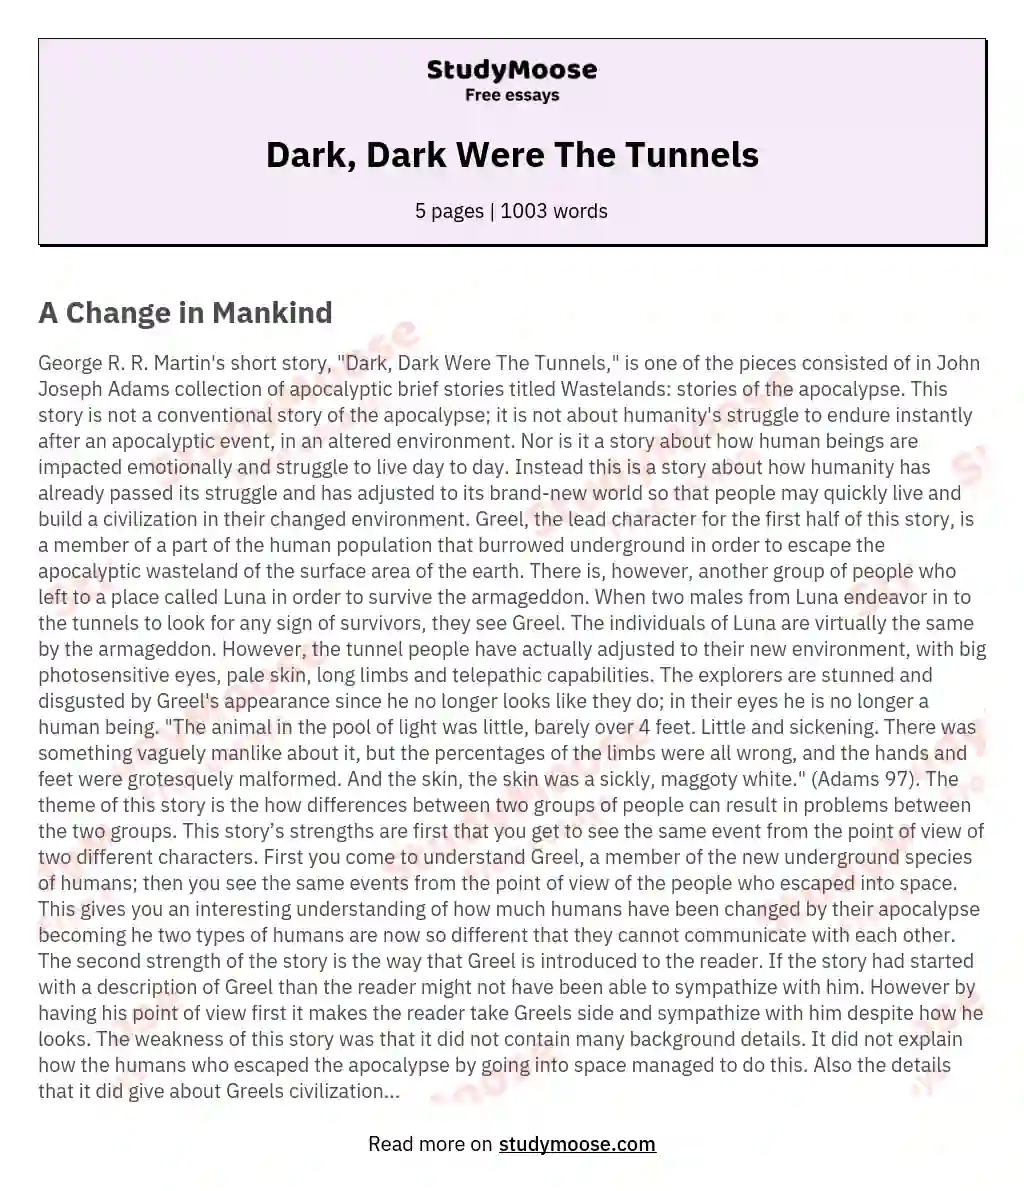 Dark, Dark Were The Tunnels